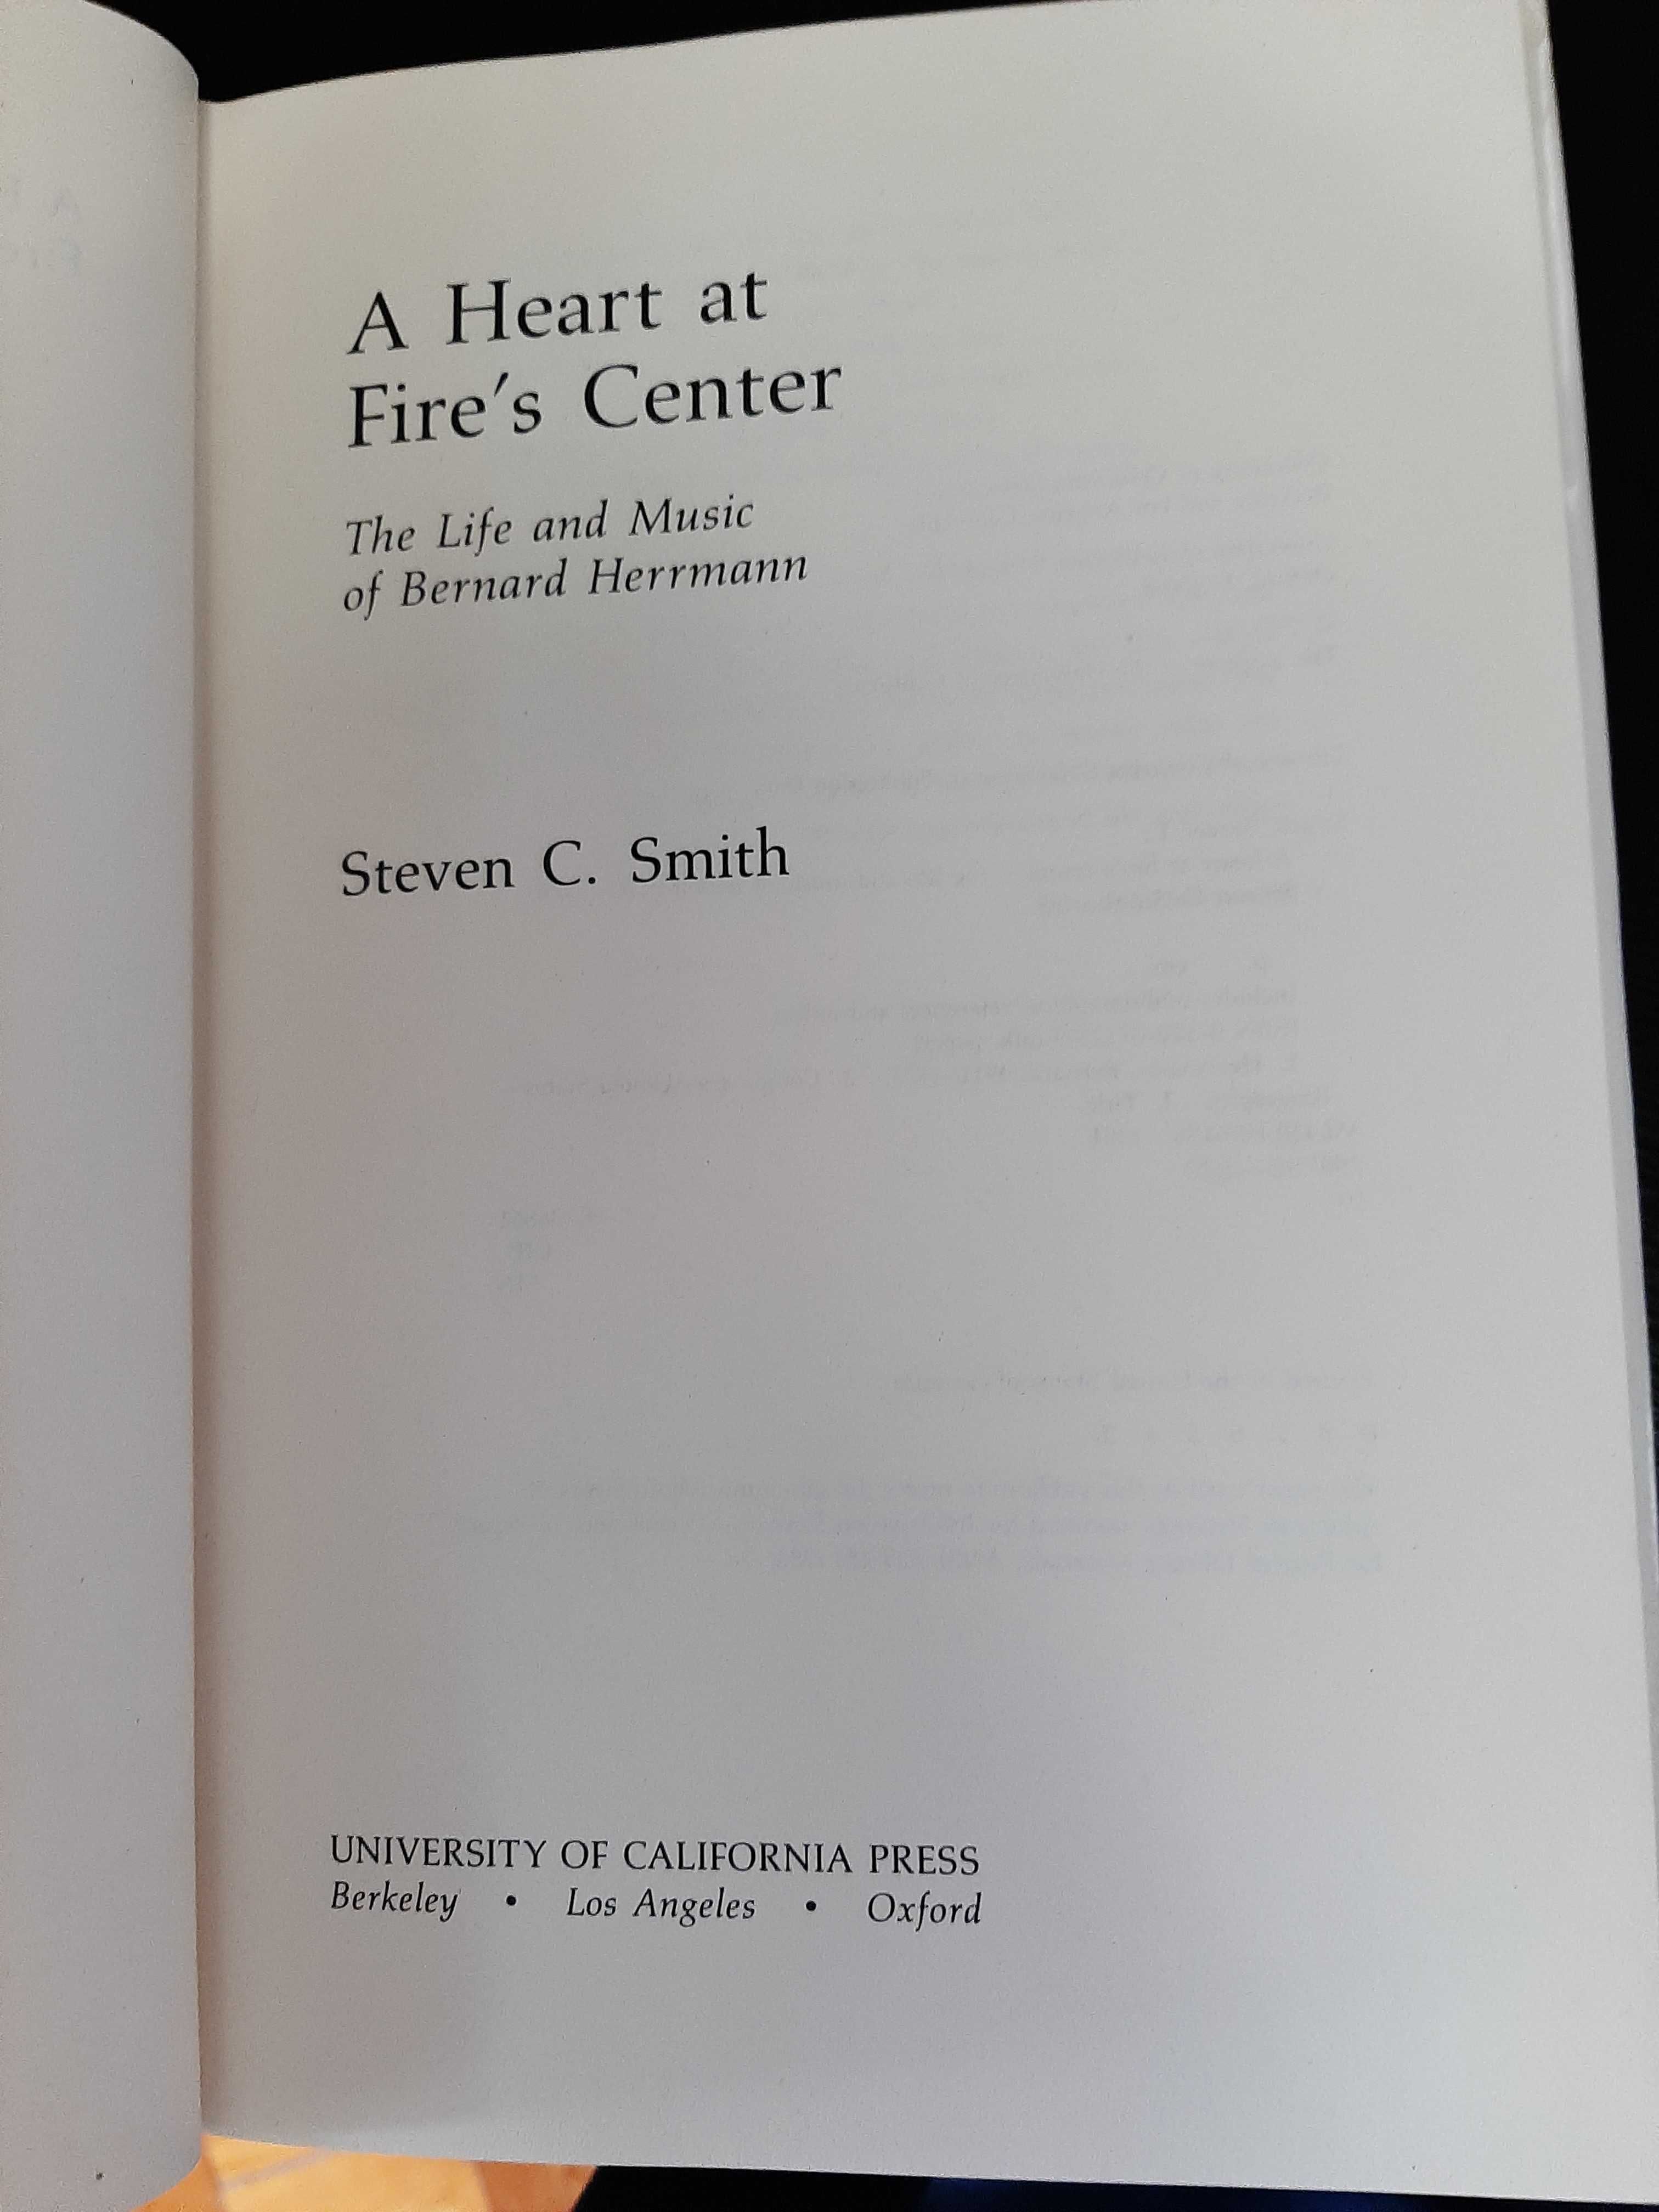 Steven C. Smith – The Life and Music of Bernard Herrmann